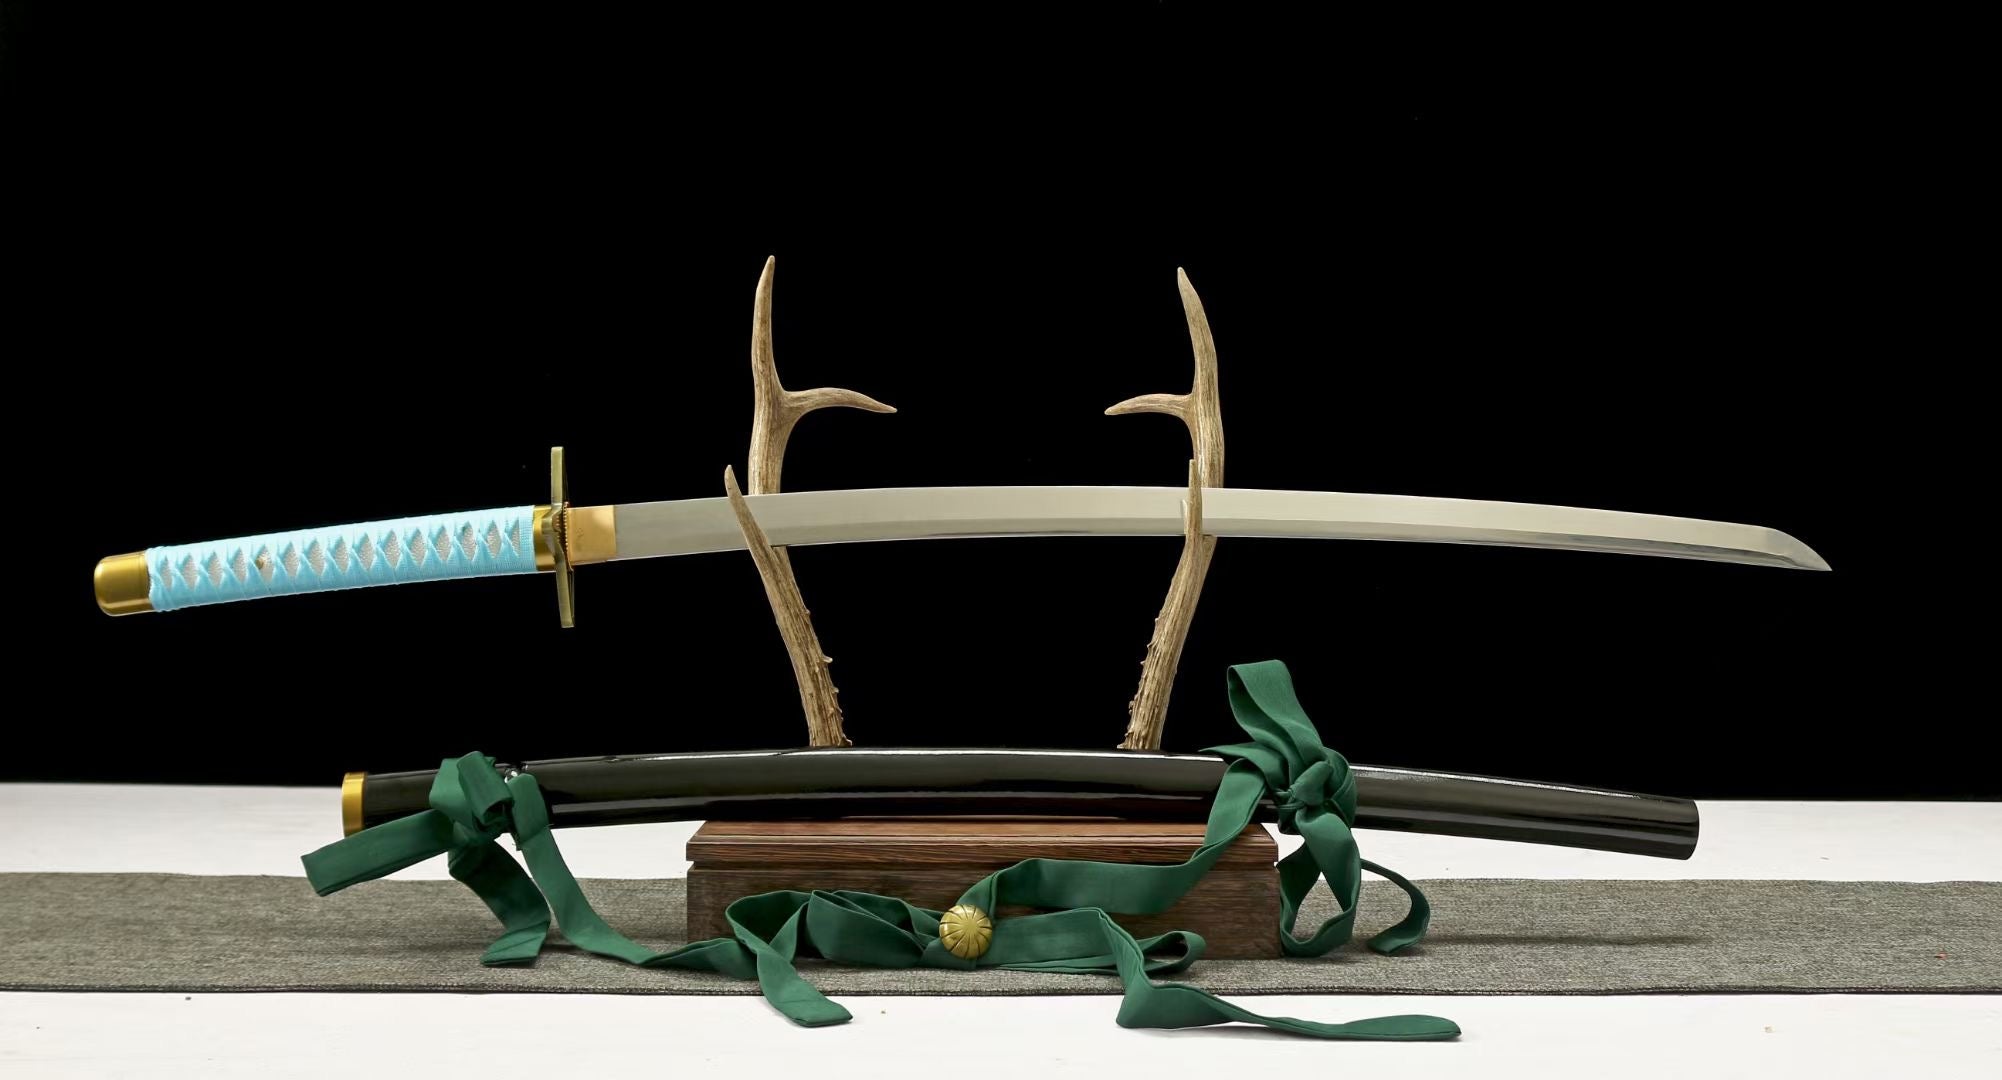 Anime Katana Sword,Demon Slayer Cospaly,Japanese Samurai Sword Real Handmade Anime Katana 1060 Carbon Steel Full Tang